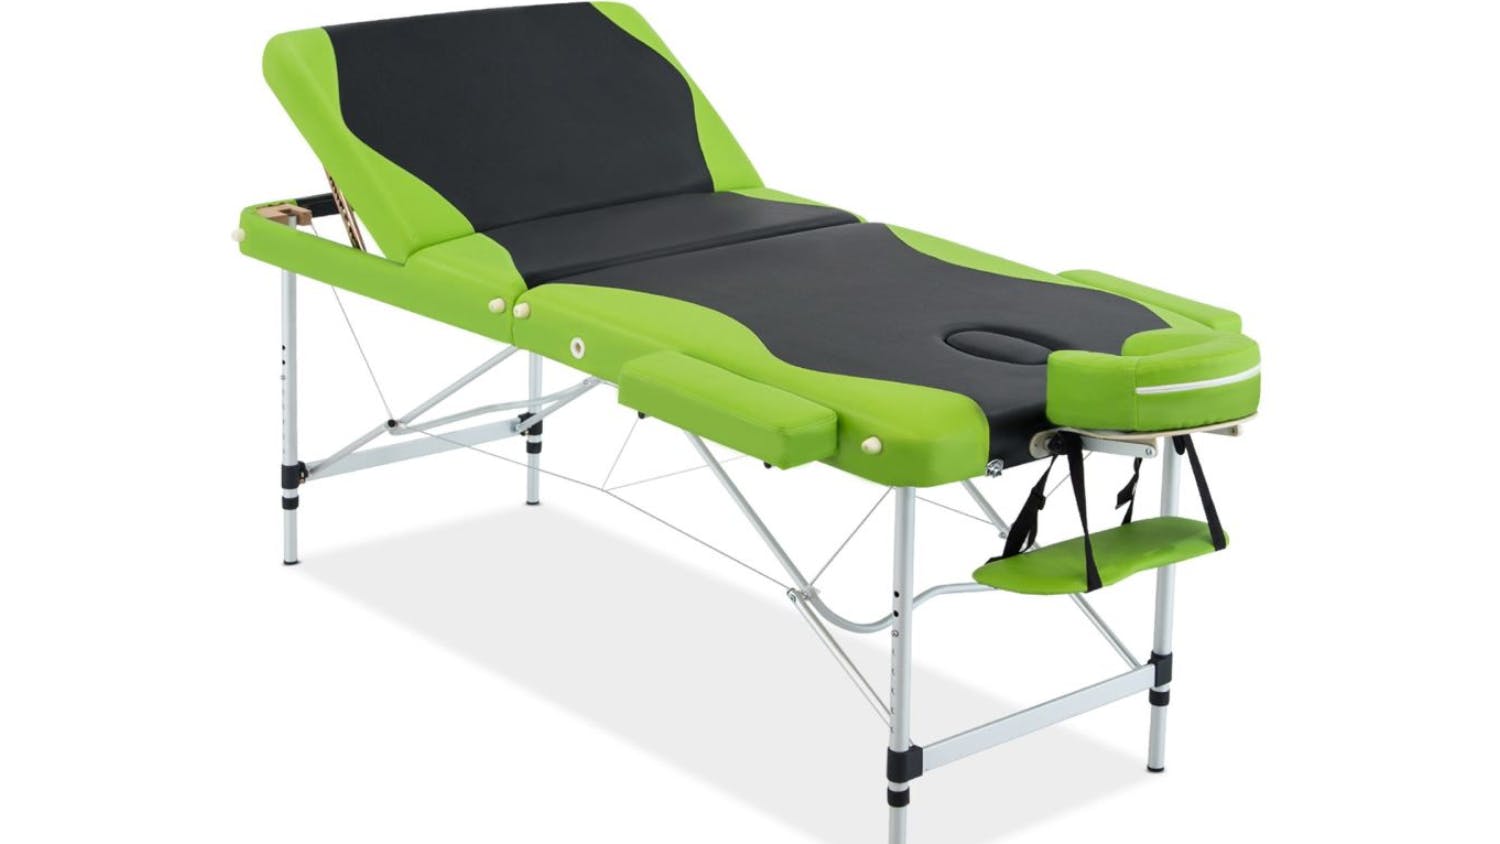 TSB Living Portable Folding Massage Table - Black/Green